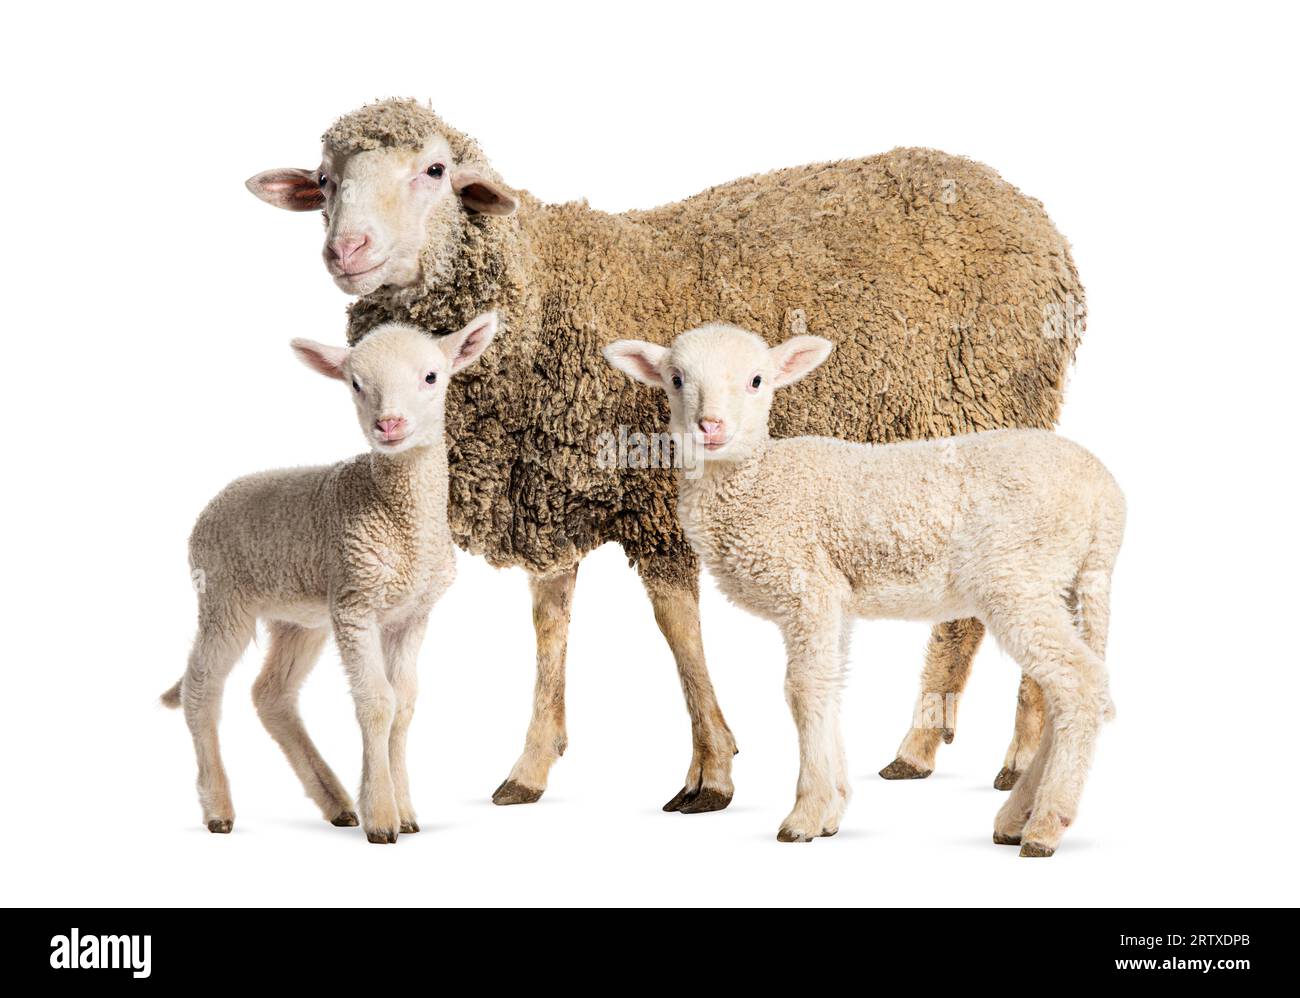 Brebis Sopravissana mouton avec ses agneaux, isolé sur blanc Banque D'Images